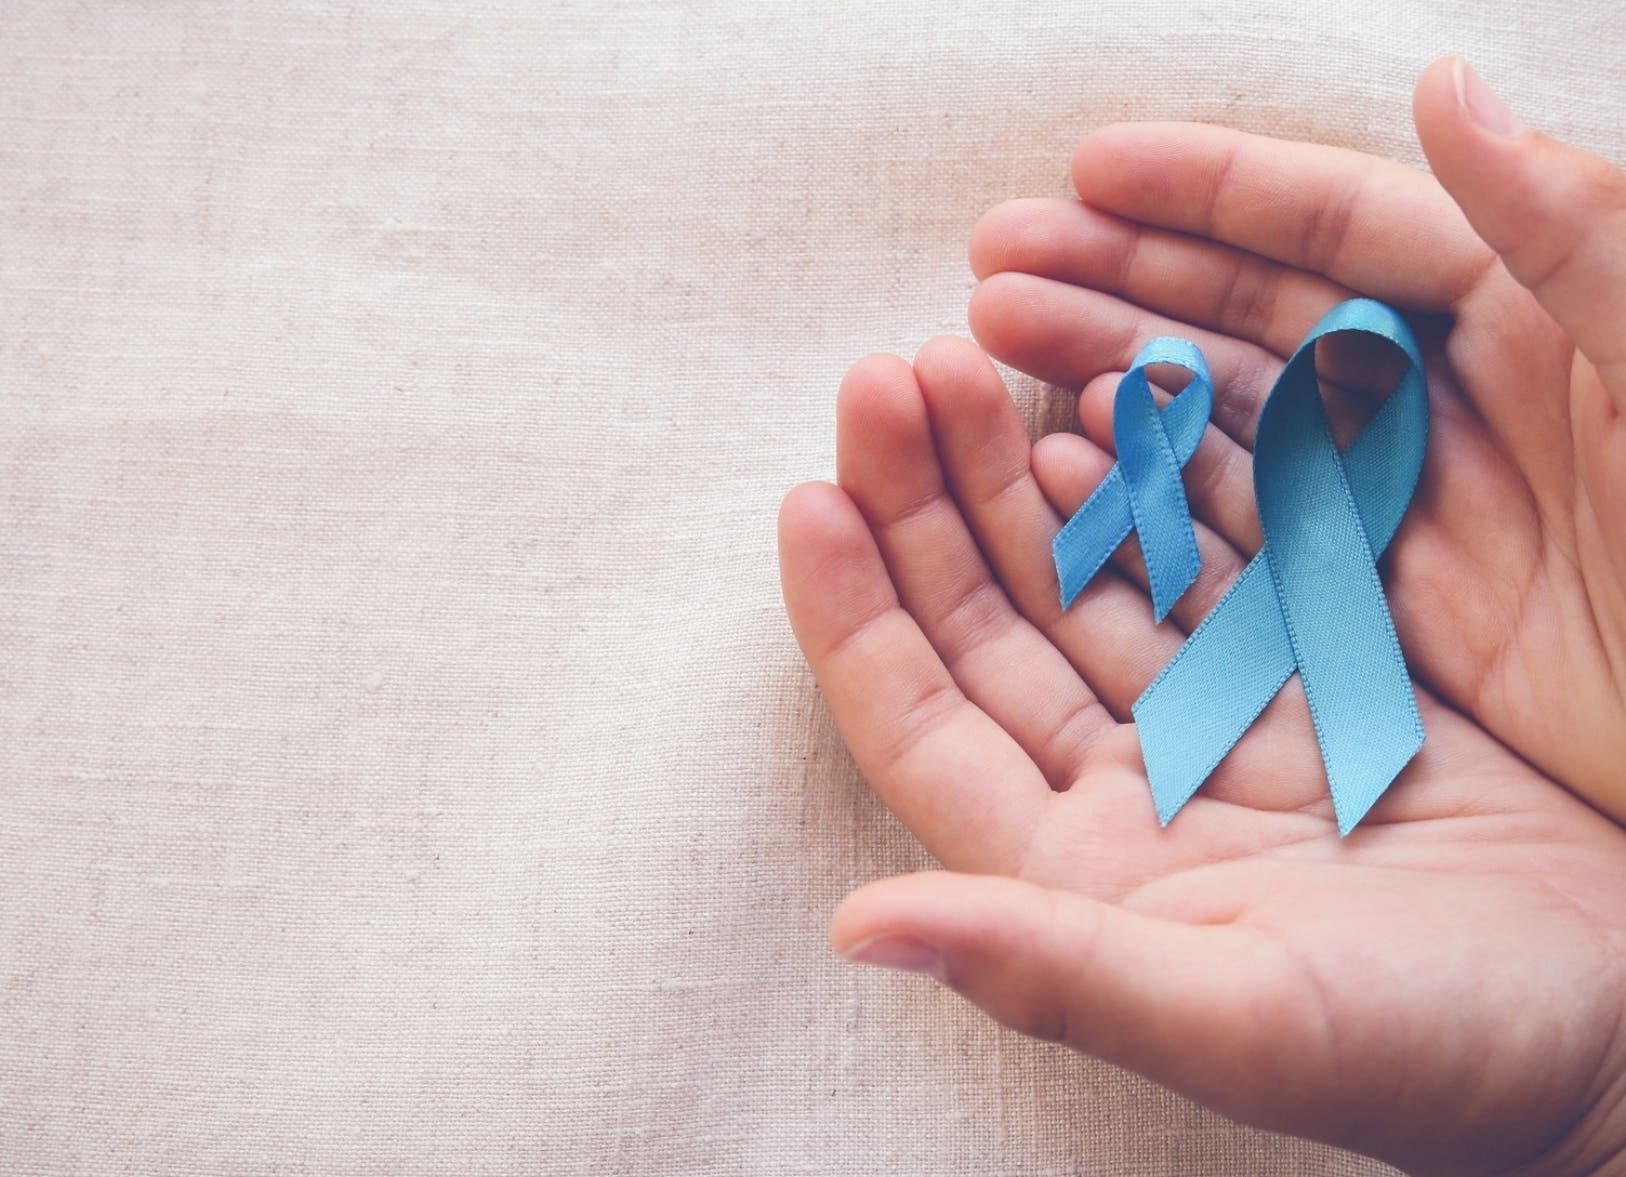 RD requiere políticas preventivas para reducir cáncer de próstata